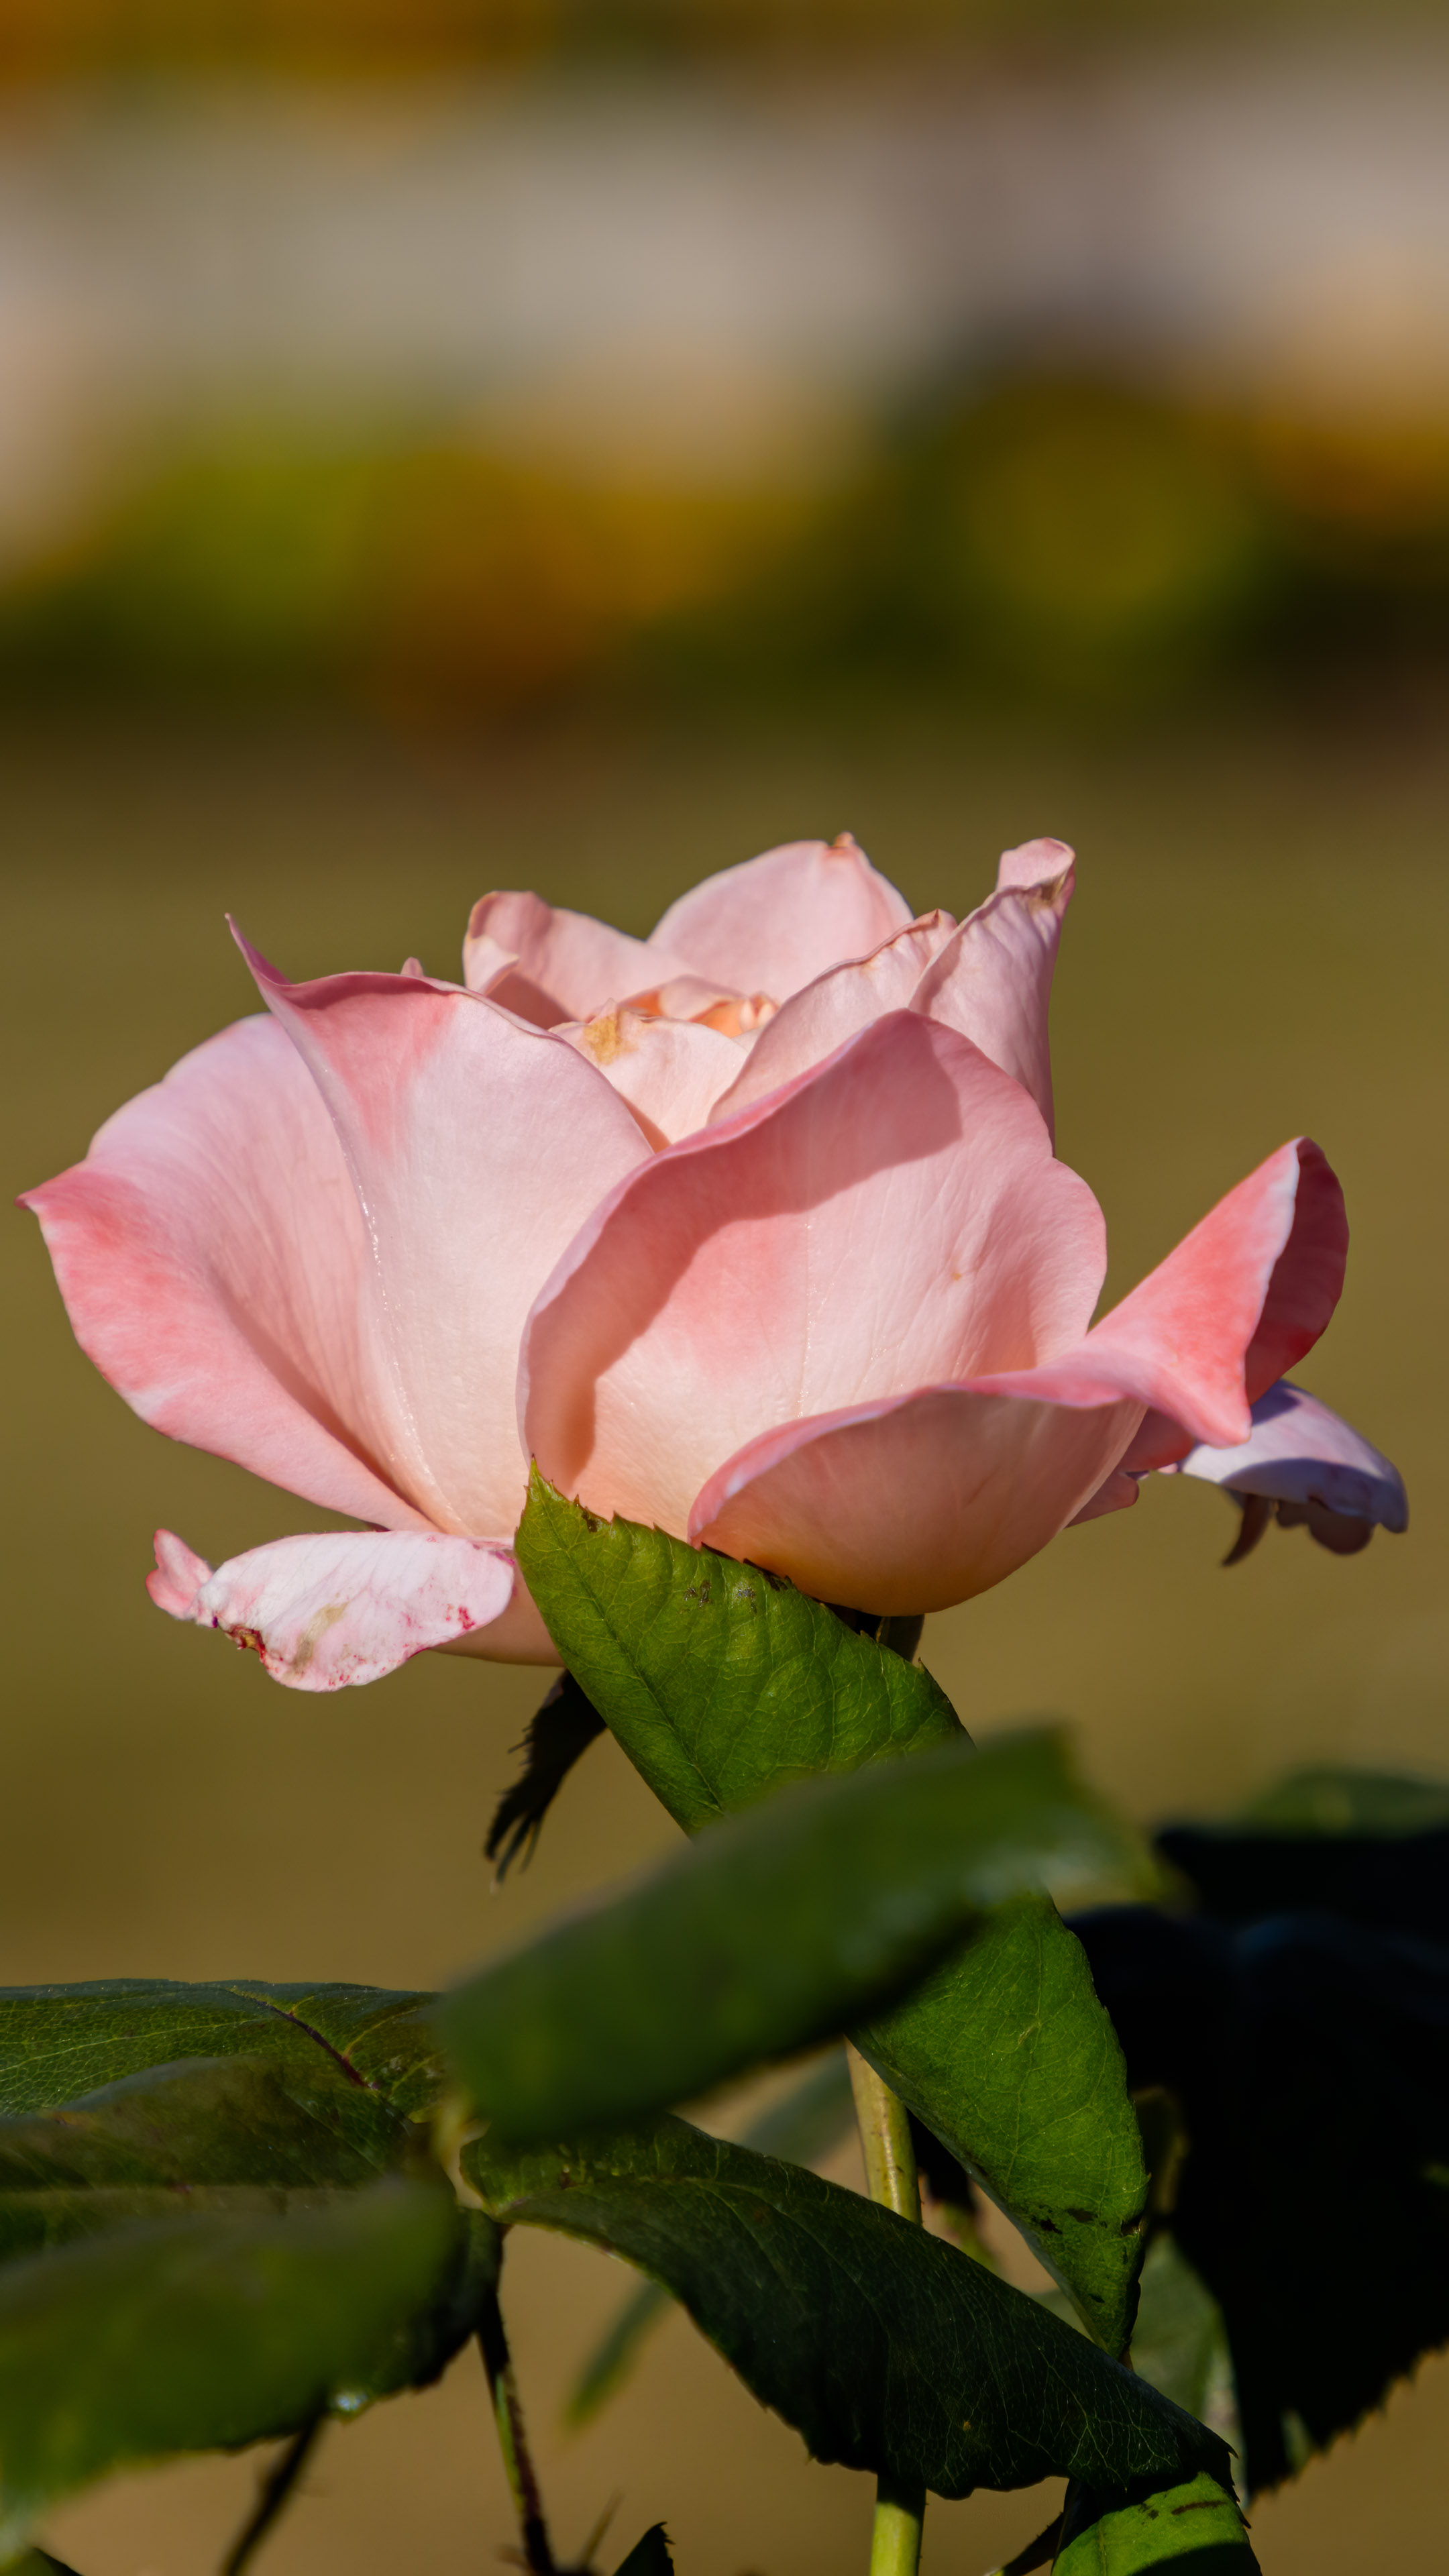 Plongez-vous dans les nuances délicates de la nature avec nos fonds d'écran de roses roses en 4K, un choix parfait pour votre iPhone.